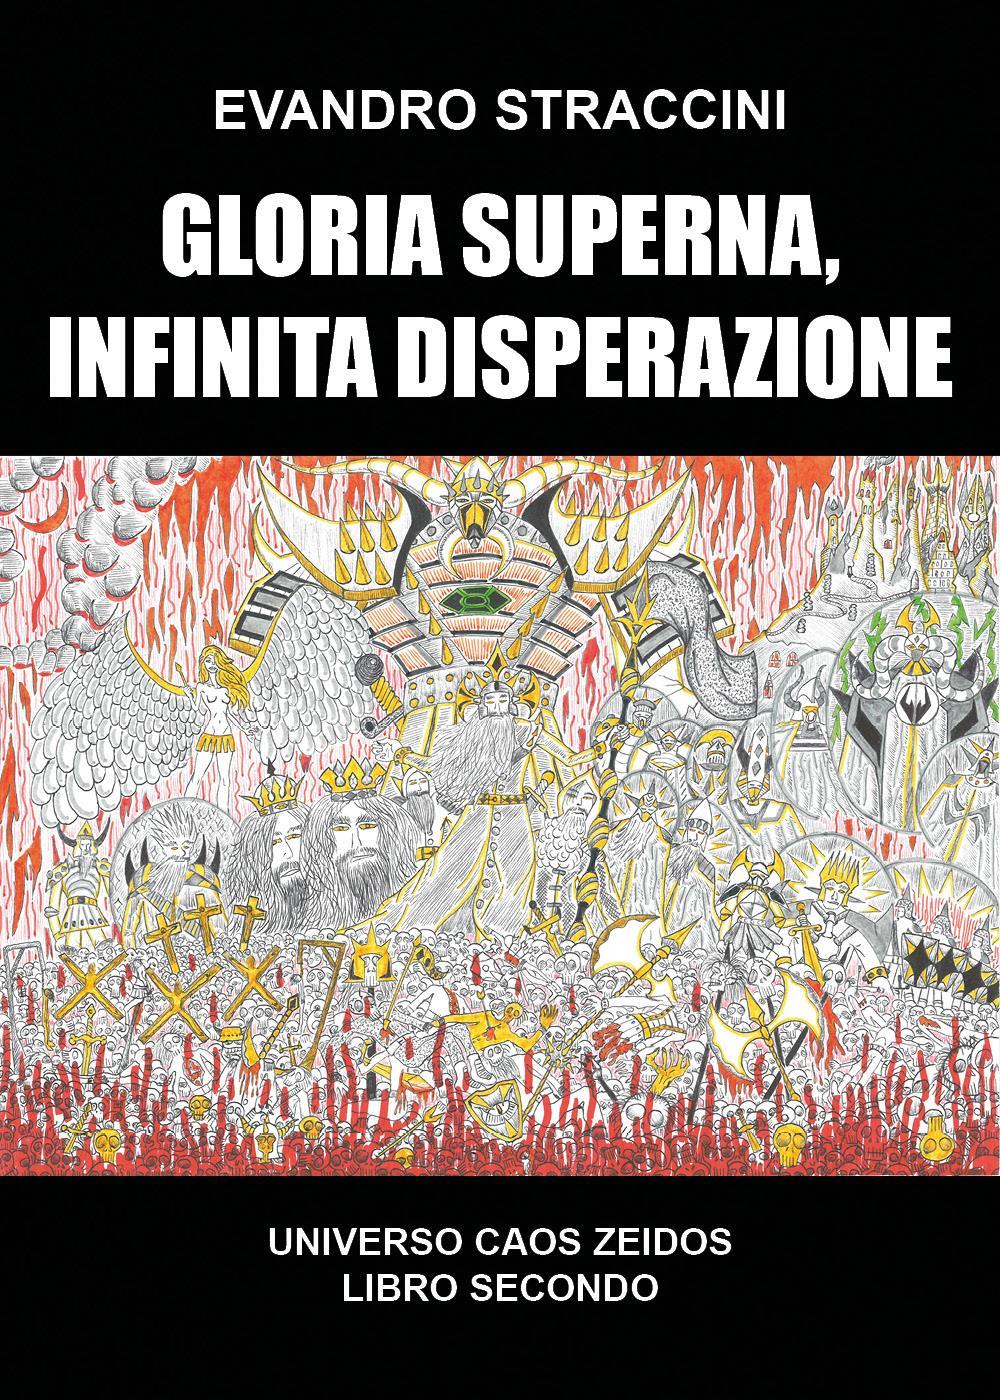 Gloria Superna, Infinita Disperazione - Universo Caos Zeidos libro secondo